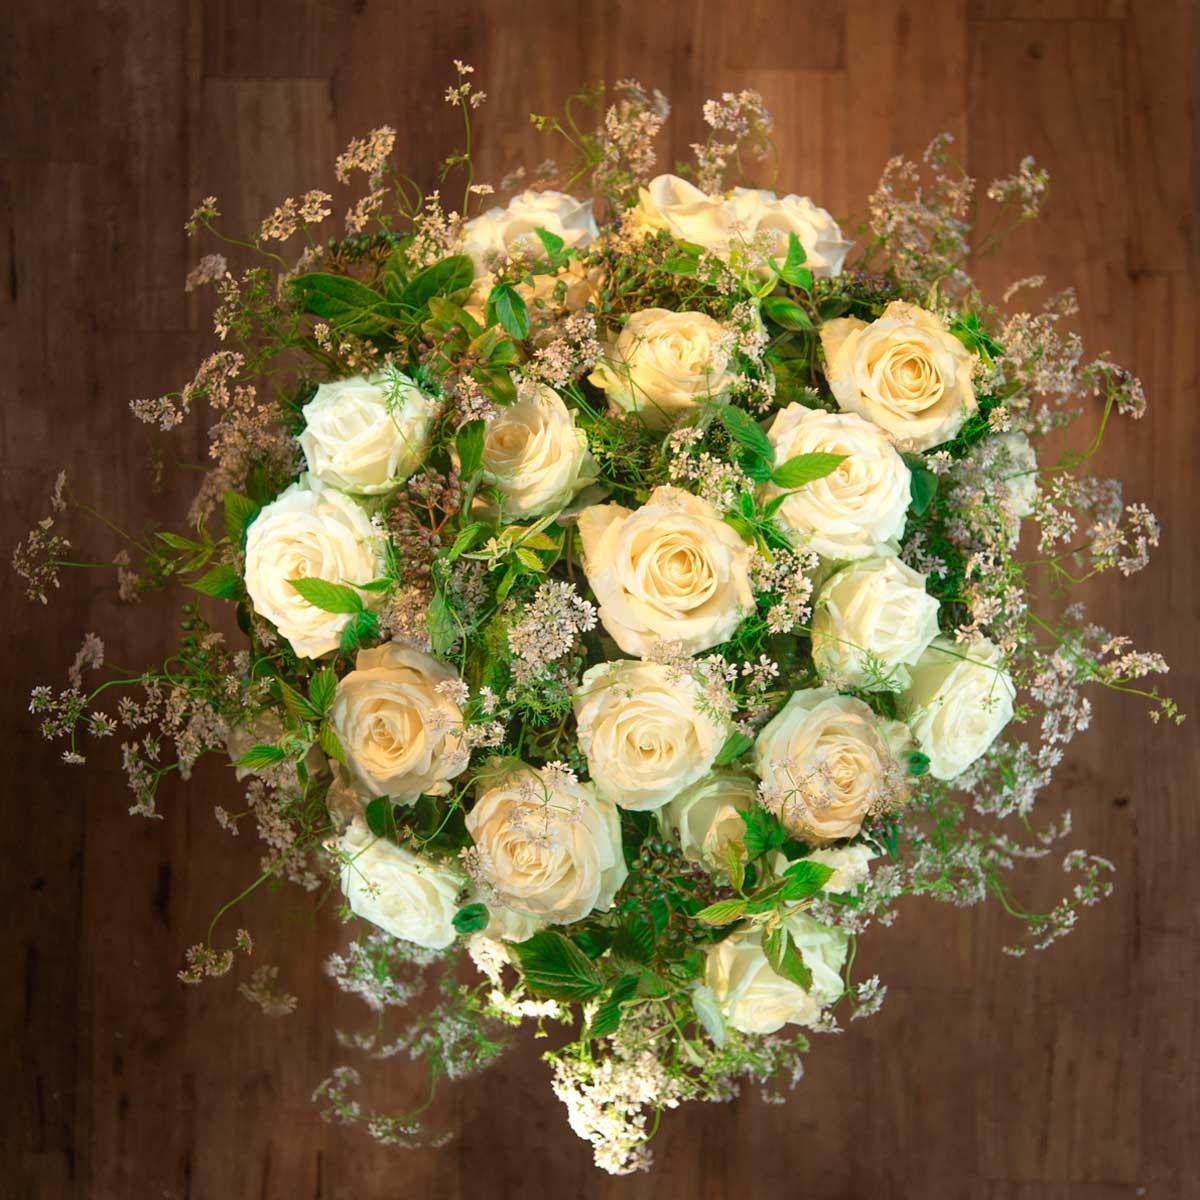 Livraison de fleurs par internet - Les roses blanches d'Héméra